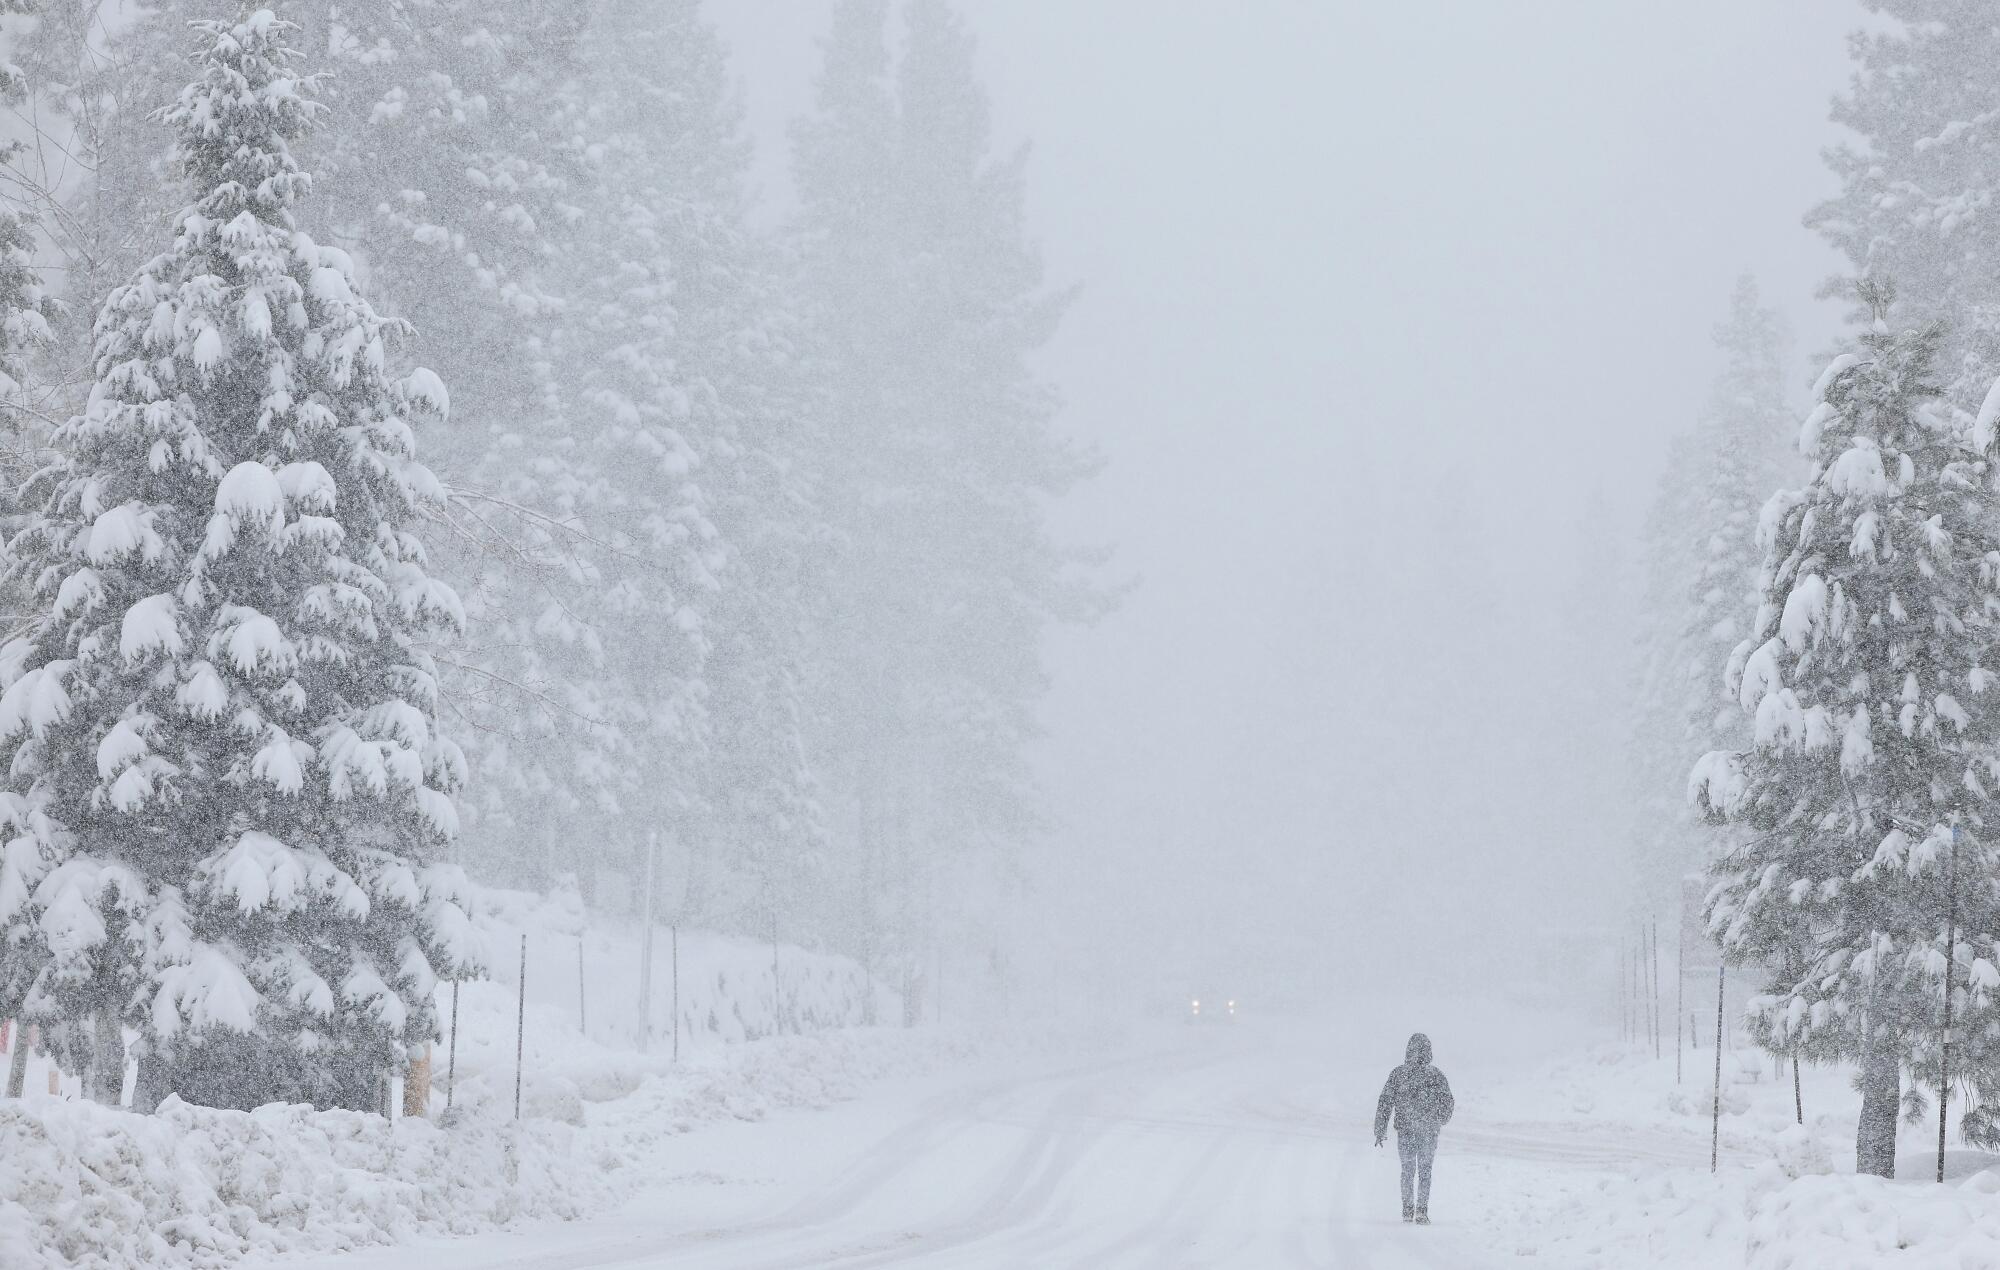 Une personne marche sur une route enneigée flanquée de pins enneigés alors que la neige tombe.